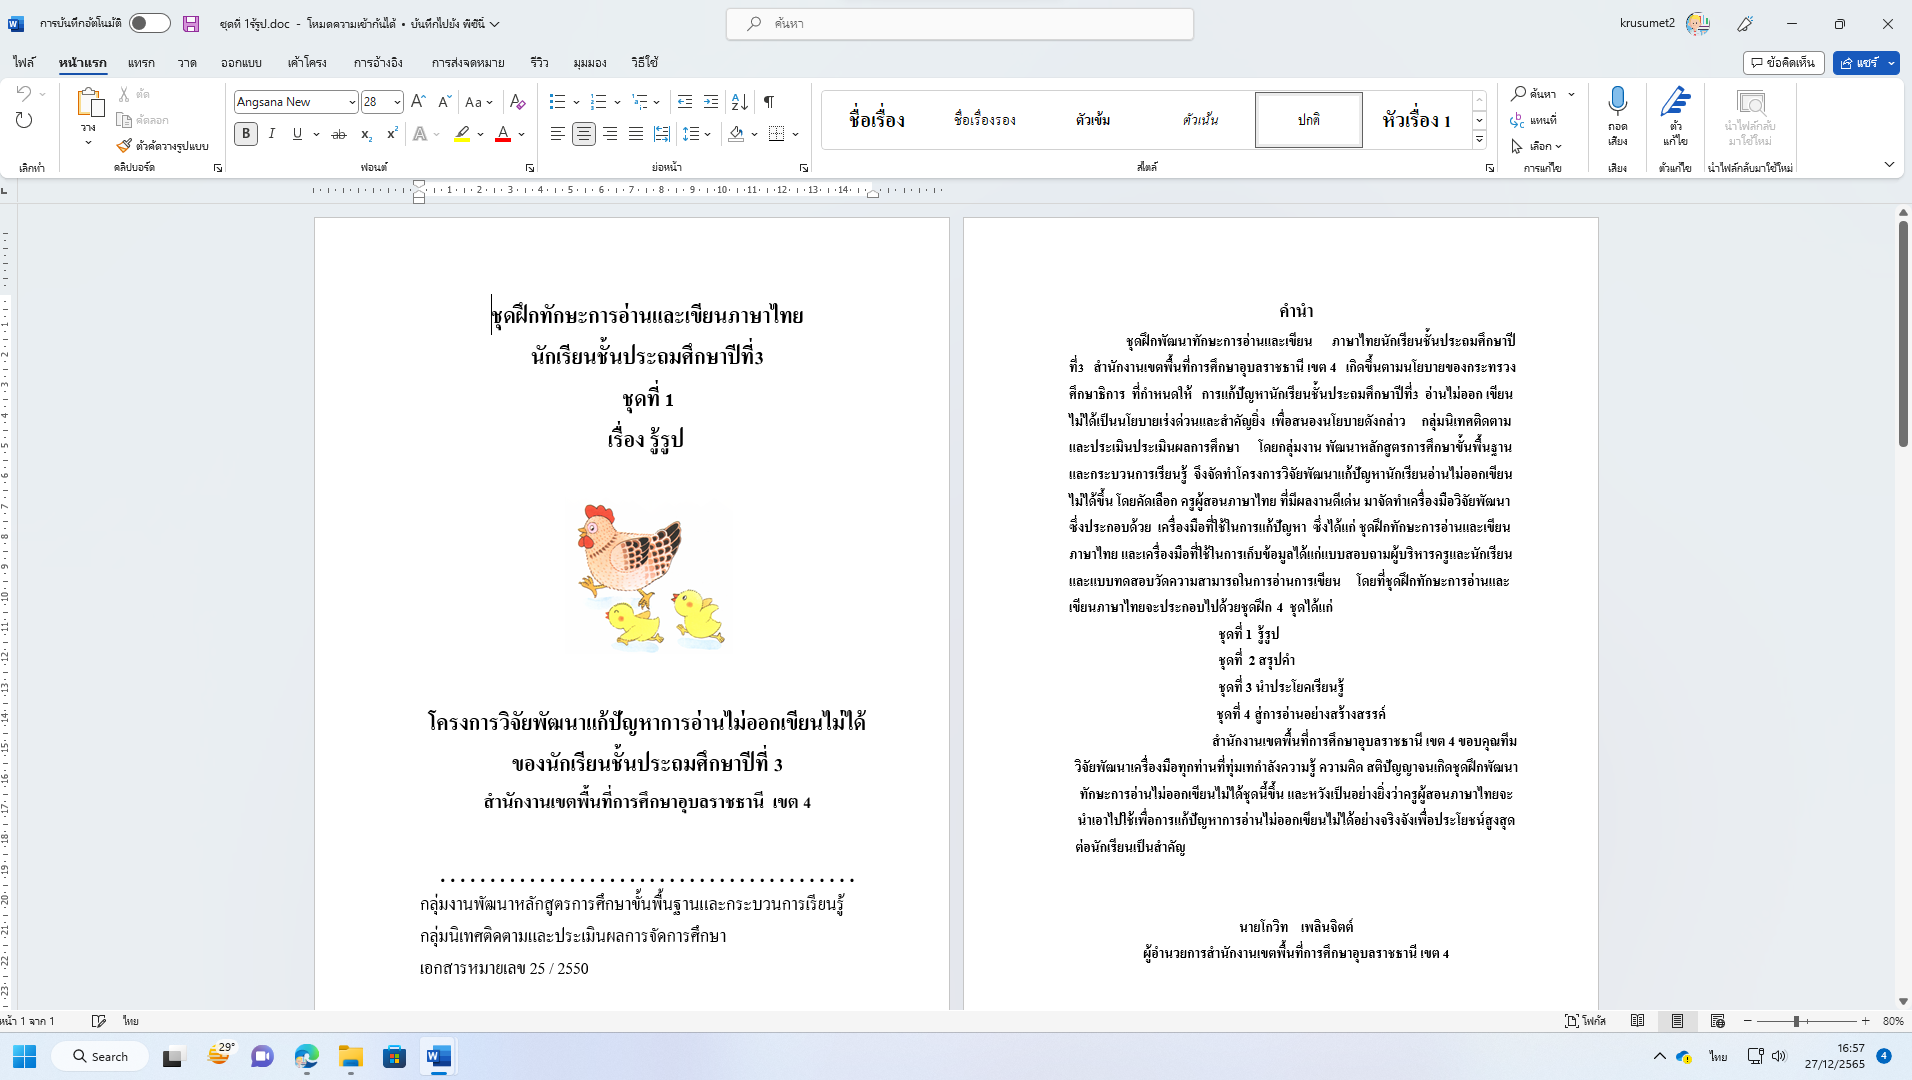 แจกไฟล์ ชุดฝึกการอ่านการเขียนภาษาไทย อ่านคล่อง เขียนคล่อง ไฟล์เวิร์ด doc แก้ไขได้